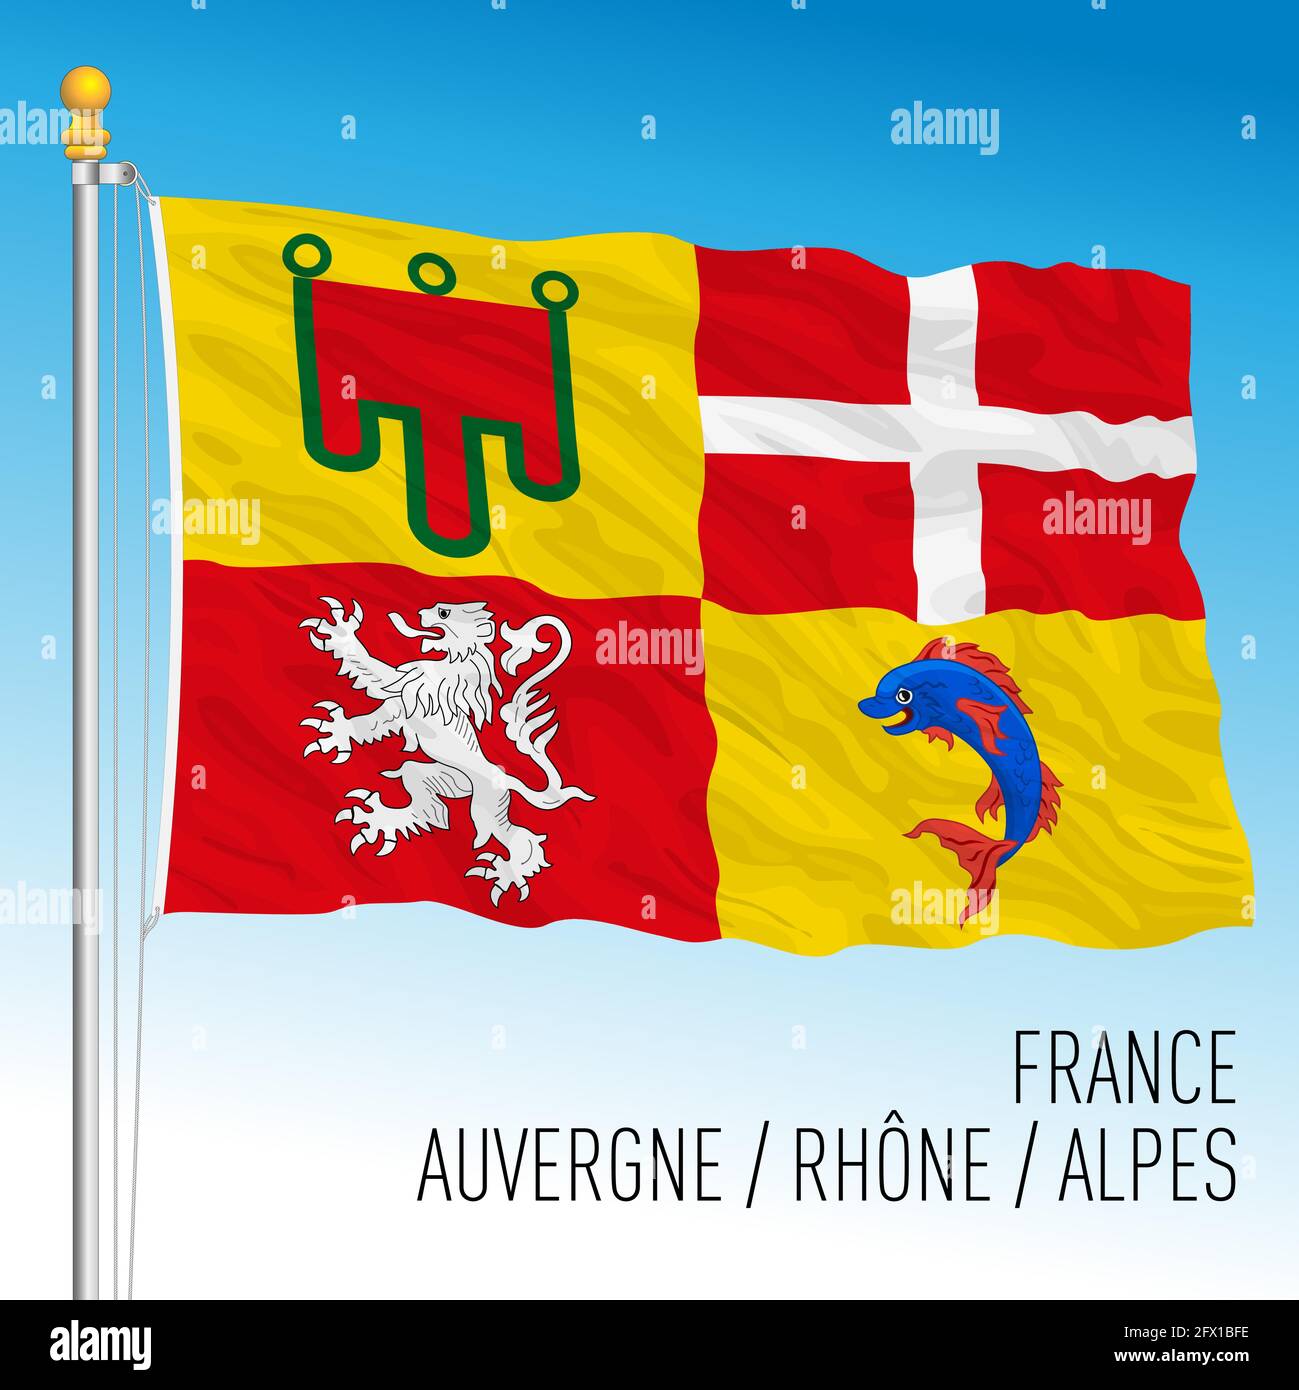 Auvergne Rhone Alpes Regionalflagge, Frankreich, Europäische Union, Vektorgrafik Stock Vektor